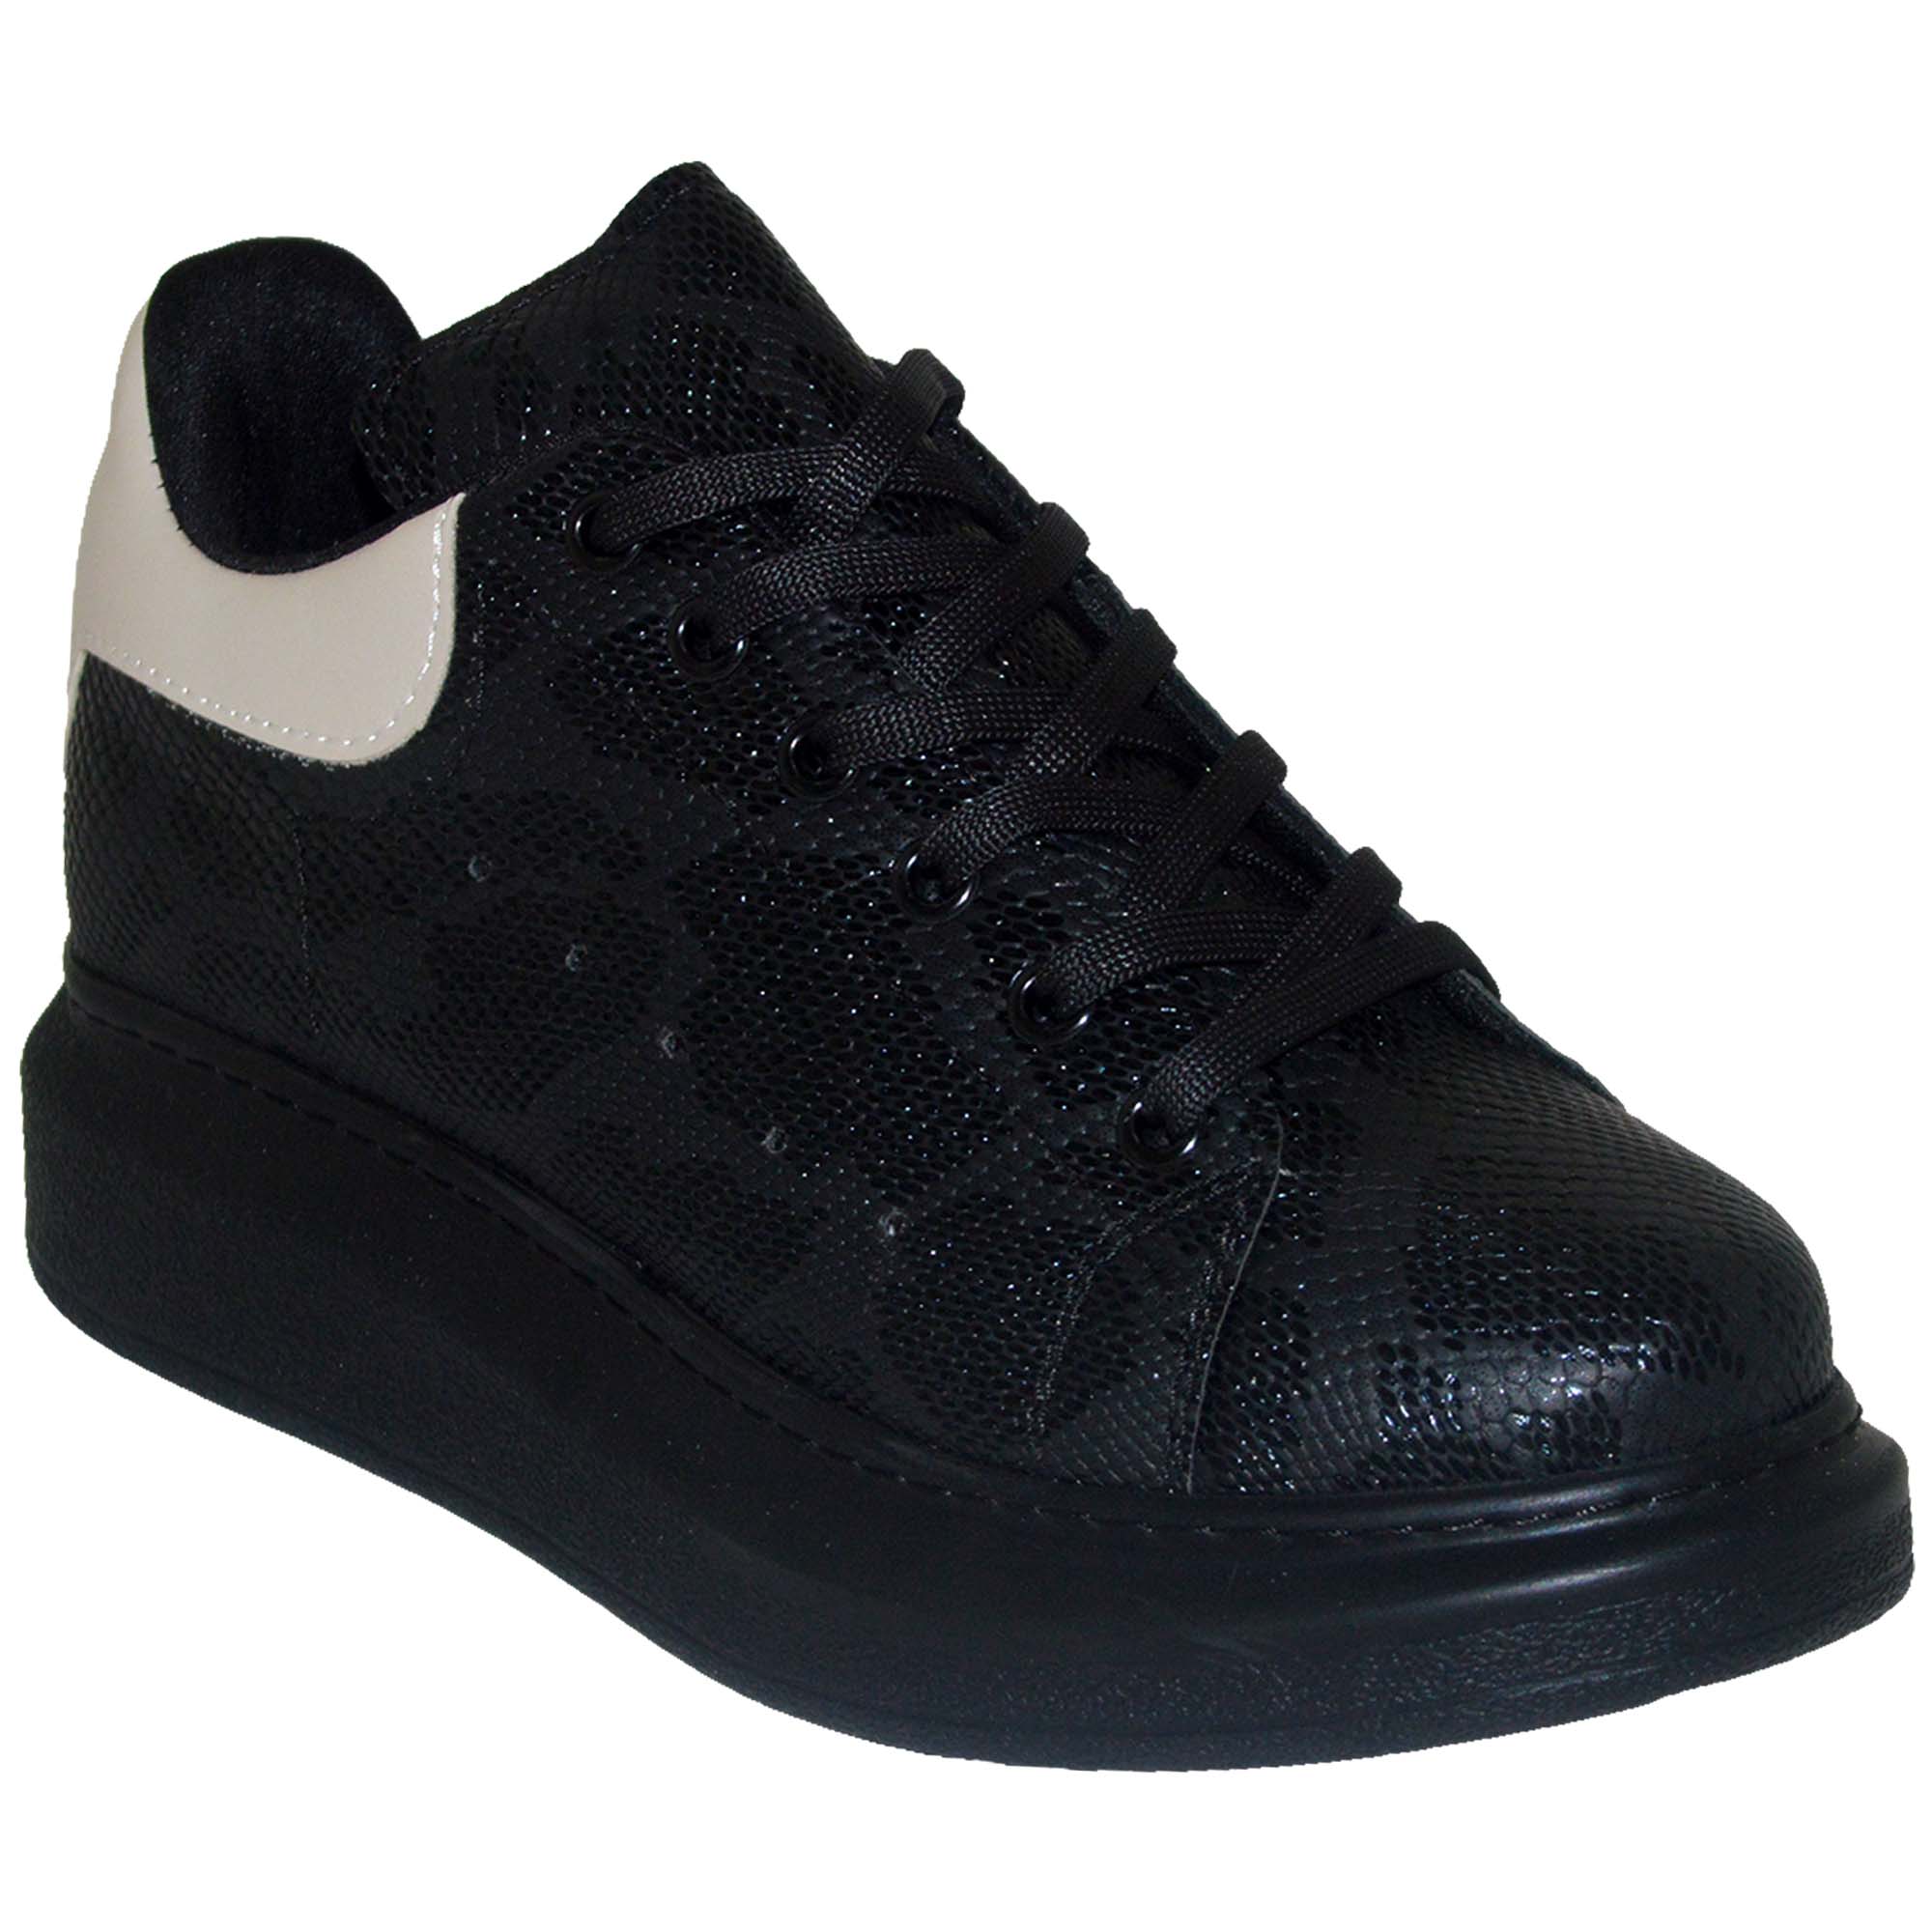 Yıldızlı Spor Model Kadın Ayakkabı - Siyah/Krem